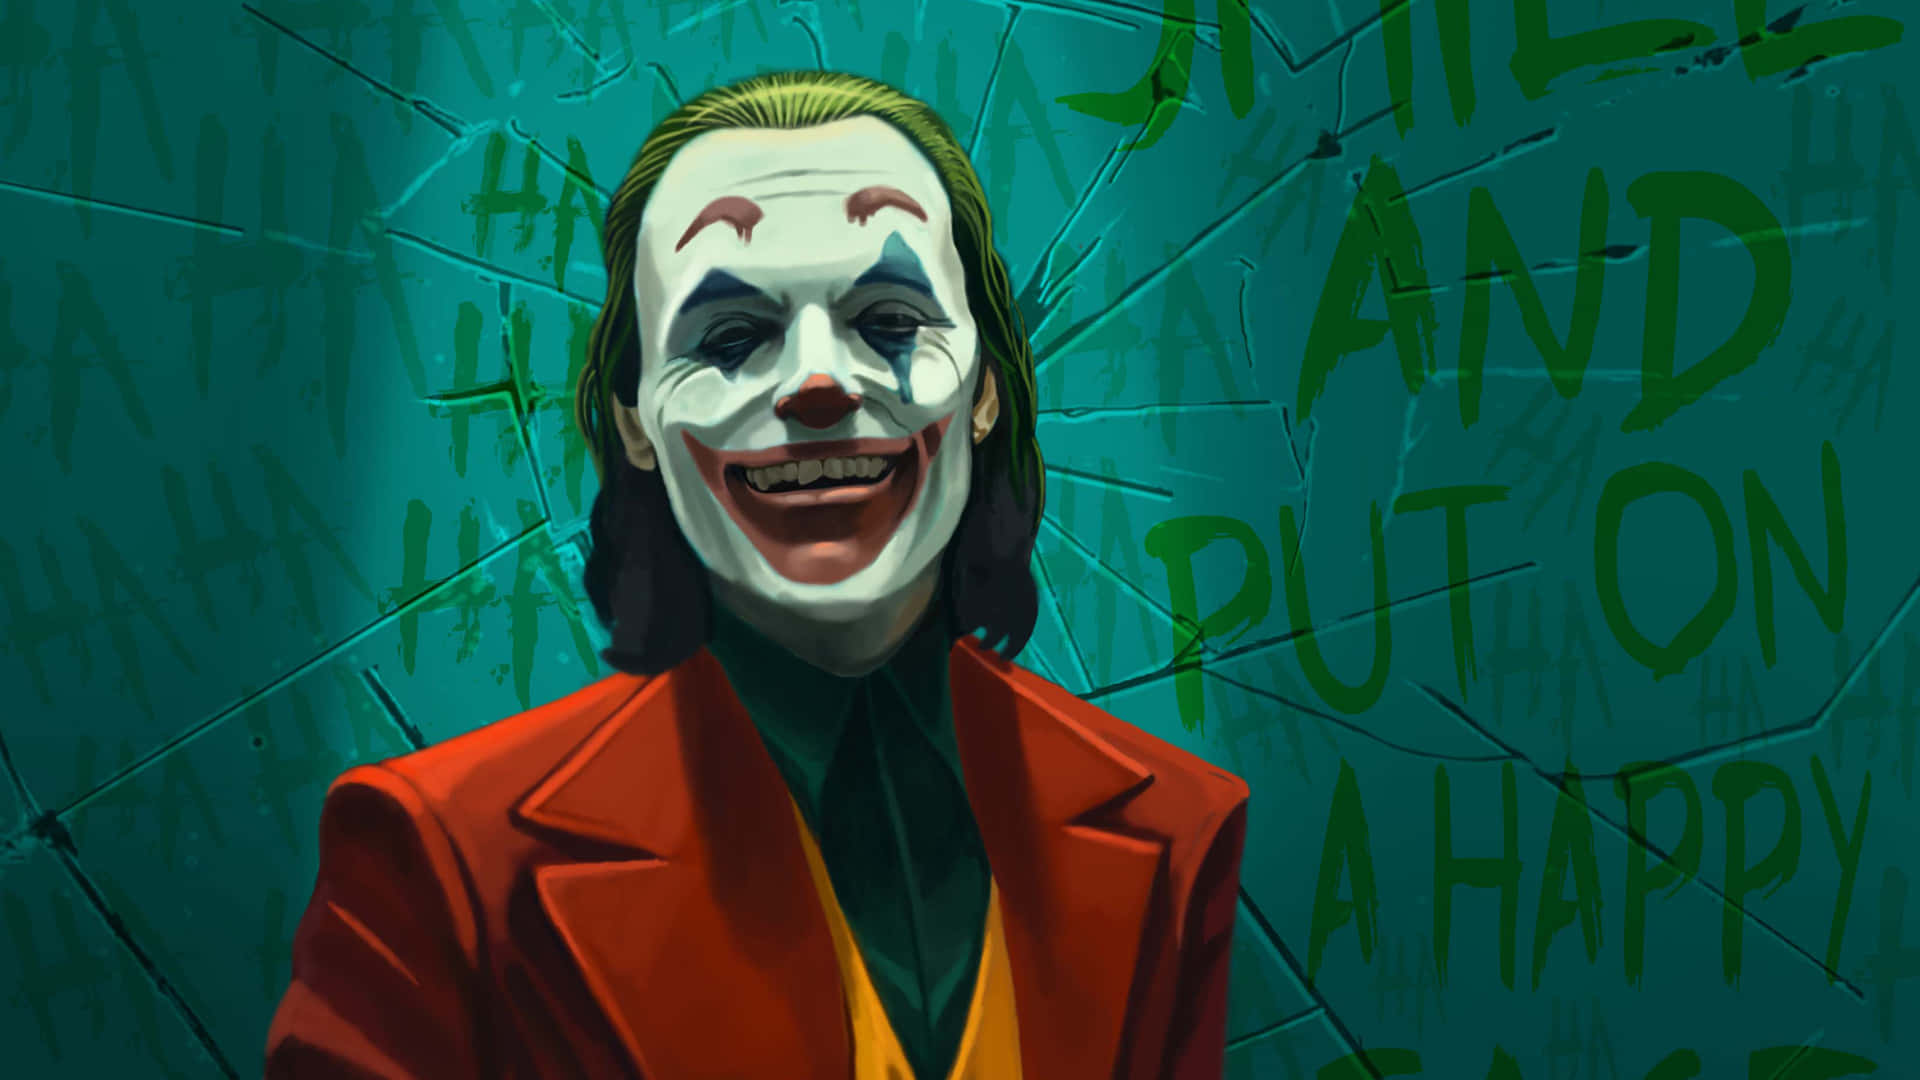 Download The Joker's menacing laughter Wallpaper | Wallpapers.com